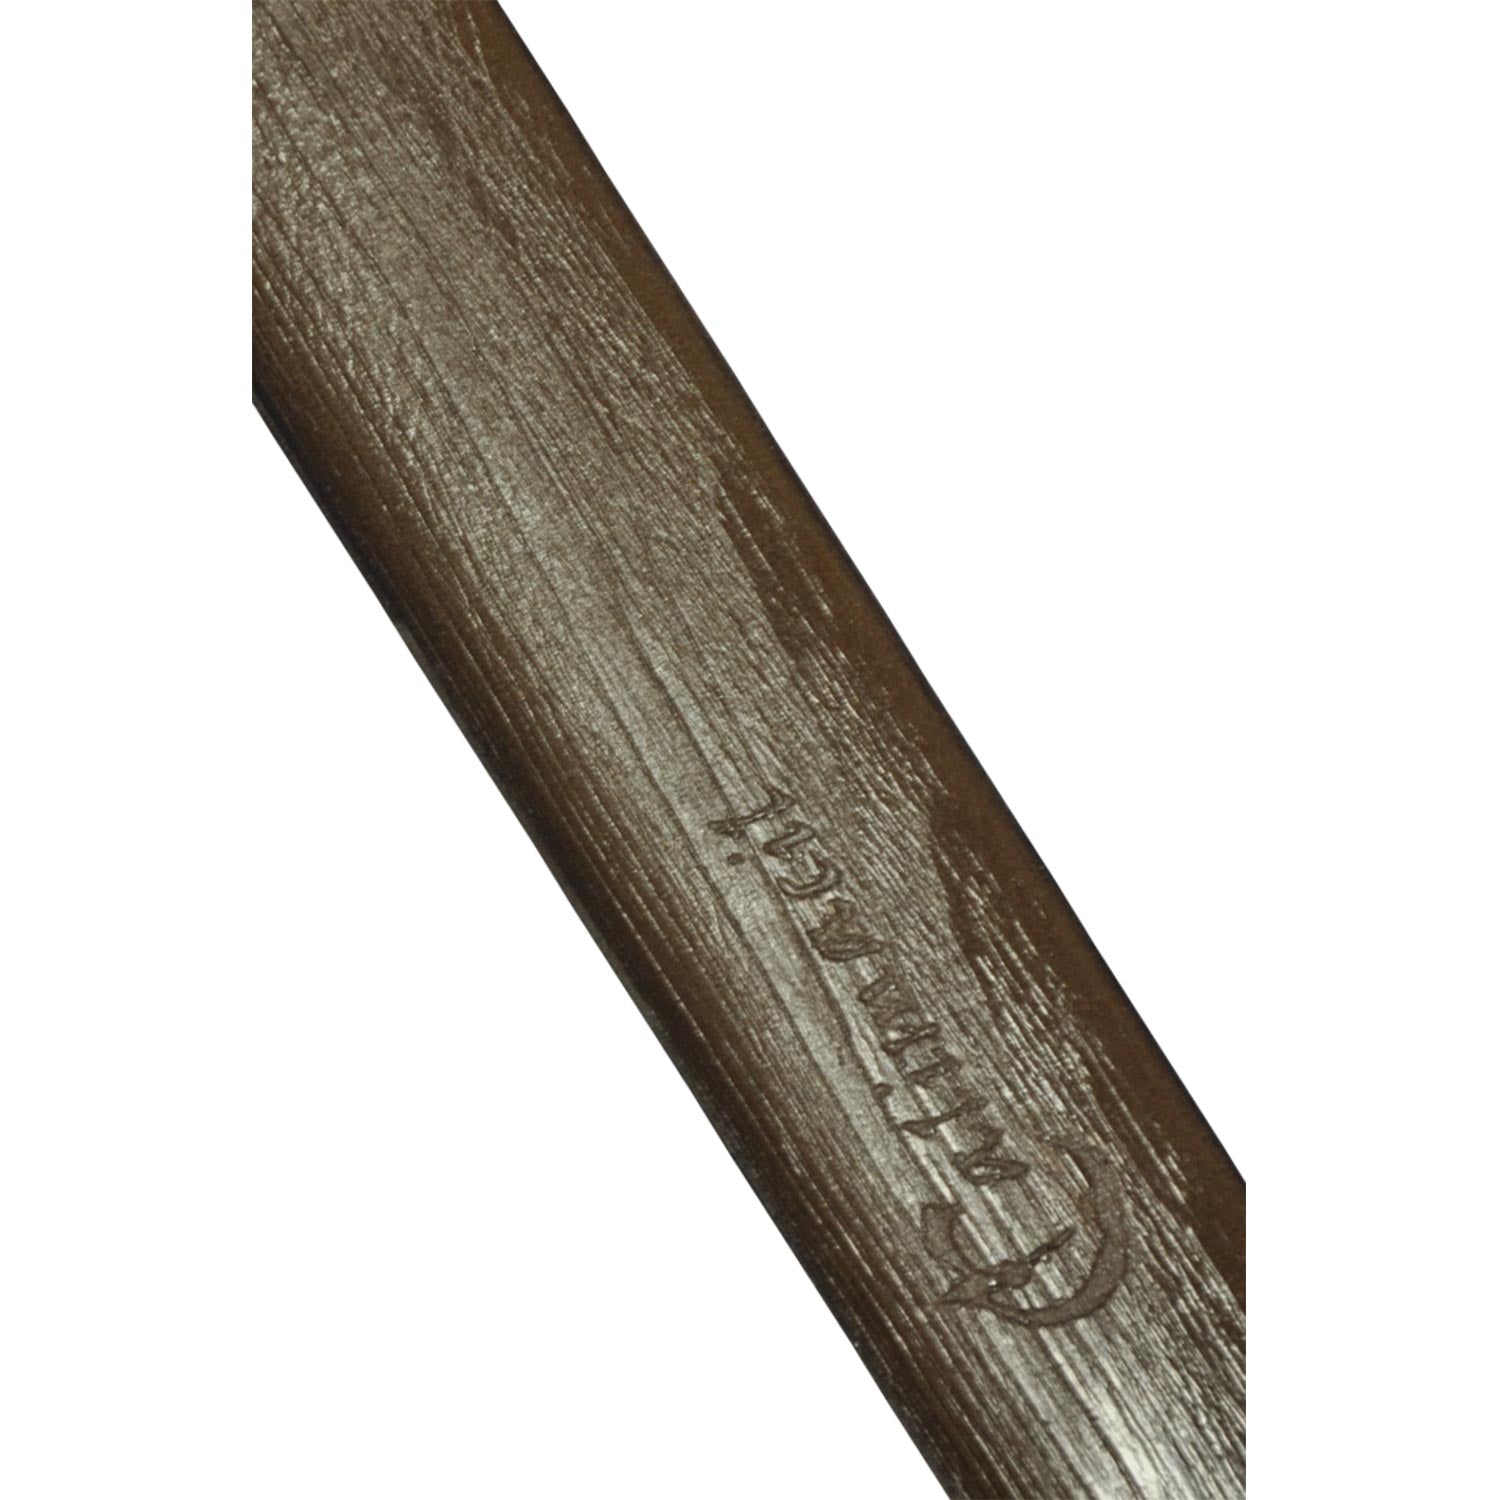 wooden staff